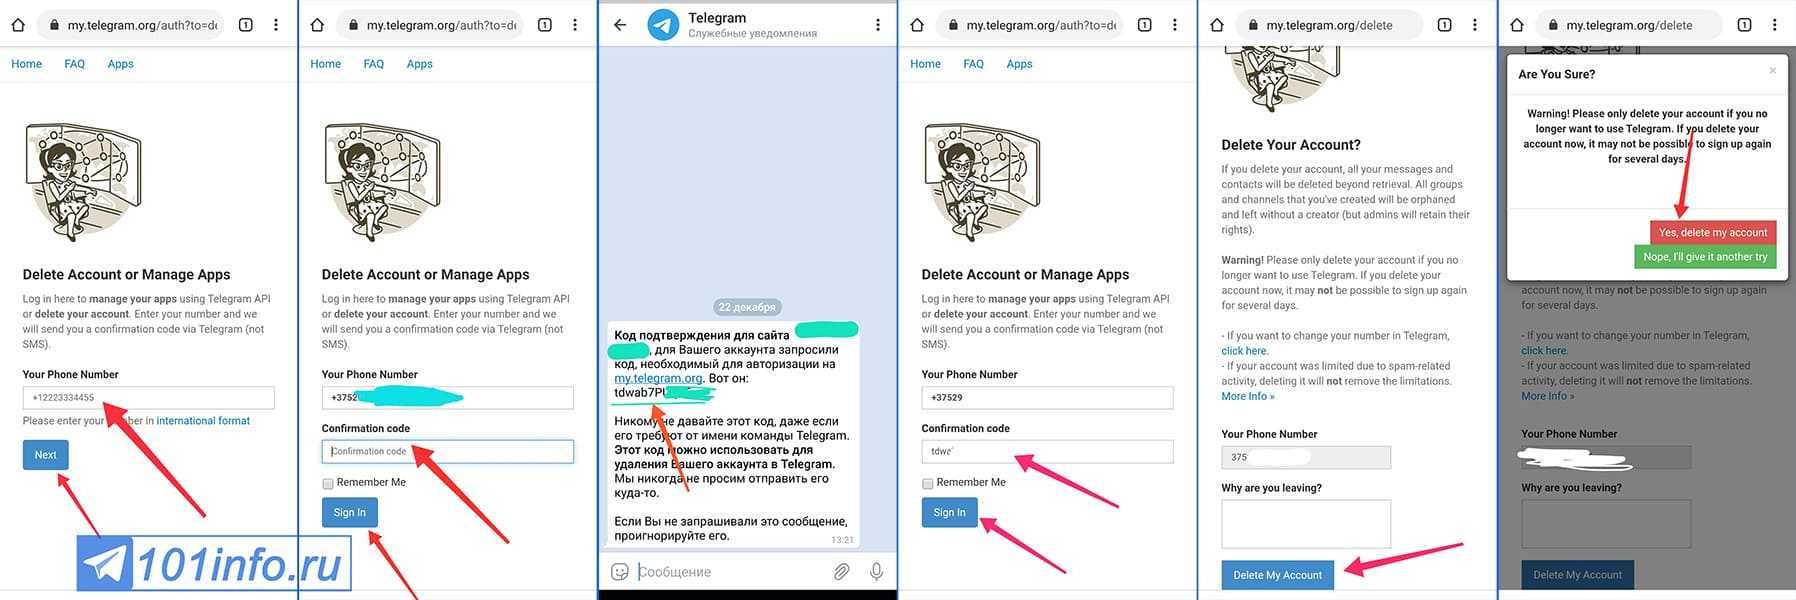 Как удалить telegram аккаунт